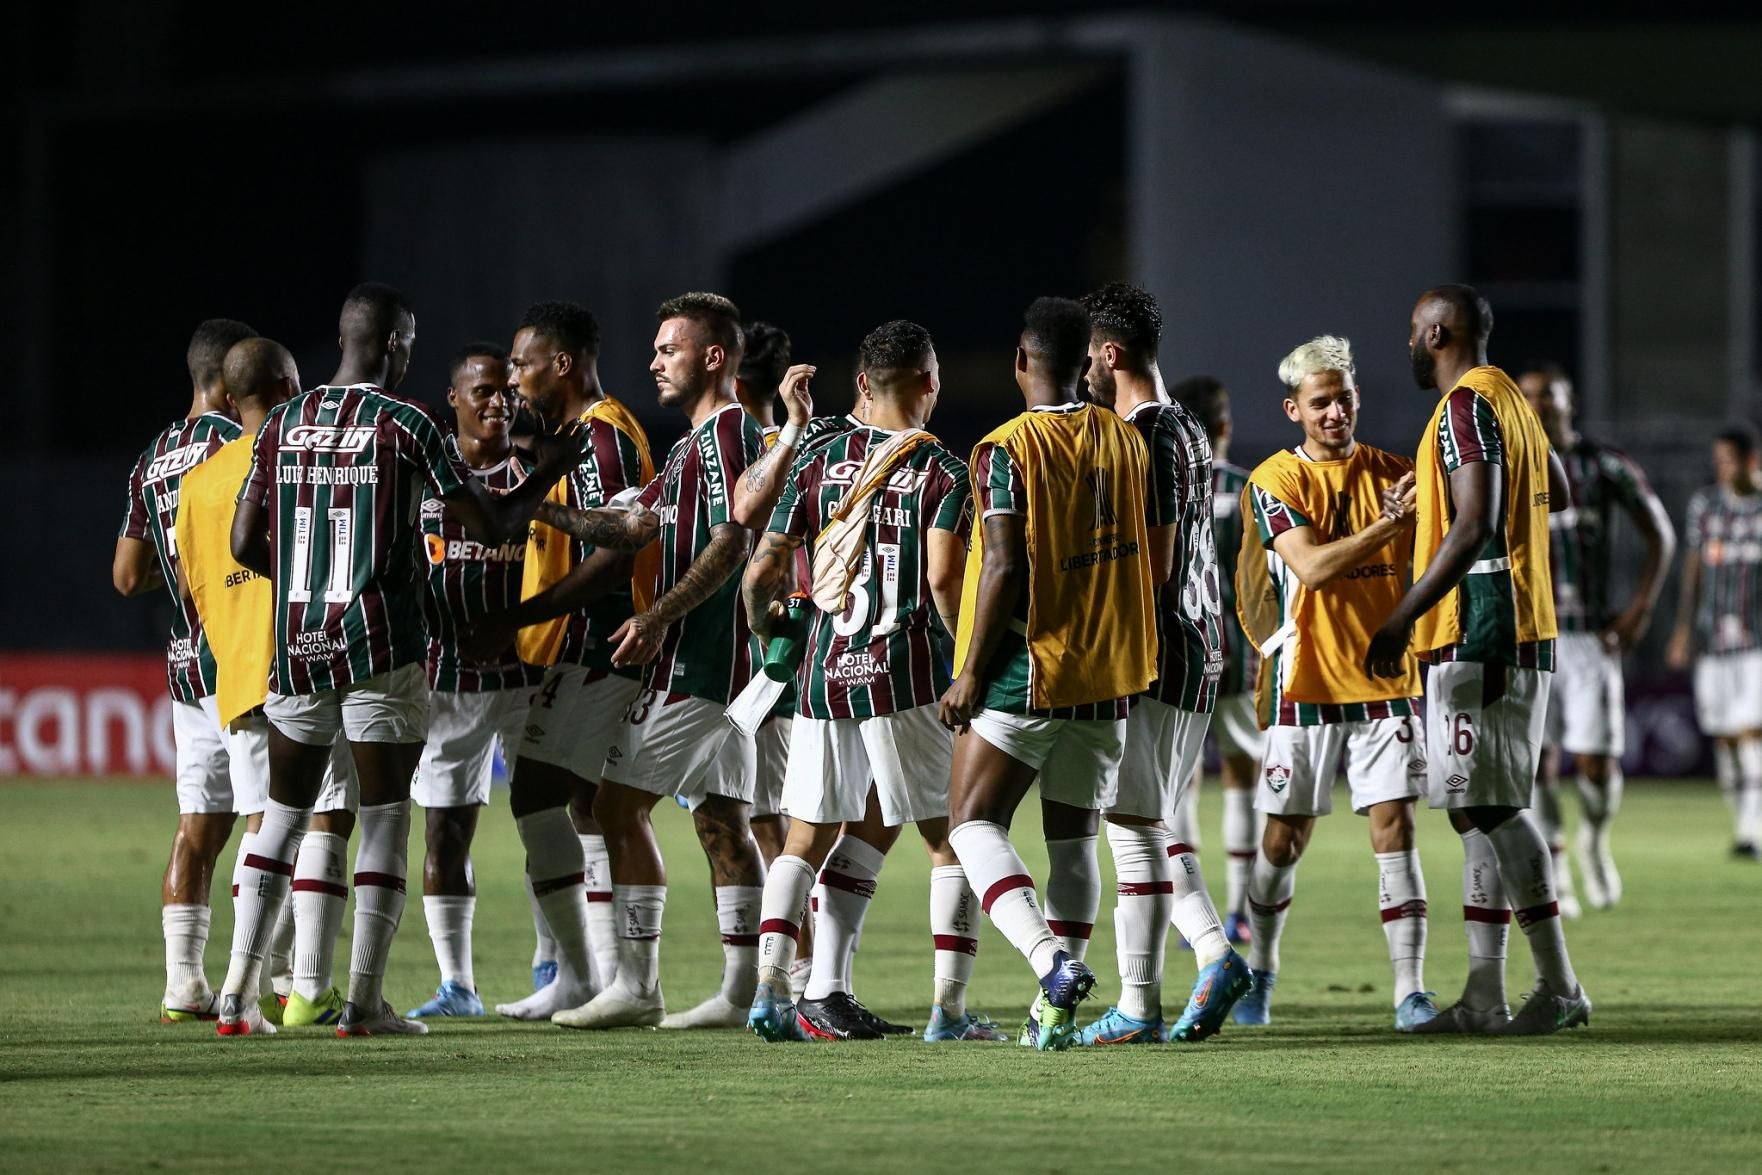 O Canto das Torcidas on X: Vamos jogar com raça, jogadores, para ganhar a  Taça Libertadores É semana de quartas de final! O Palmeiras entra em campo  hoje, em busca de se